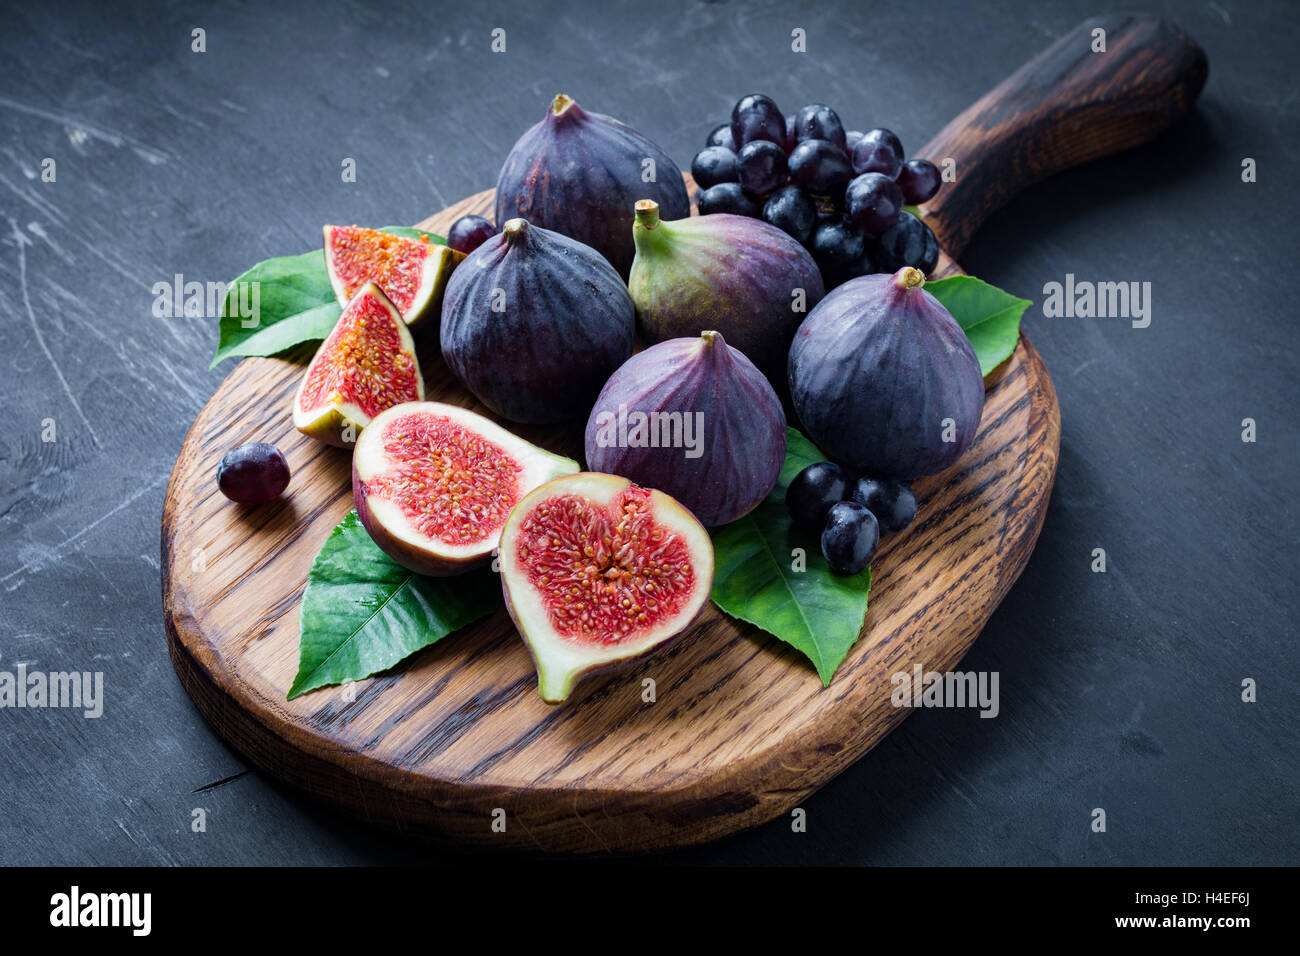 Plateau à fruits : figues fraîches et les raisins noirs 'Isabella' sur planche à découper en bois. L'horizontale Banque D'Images